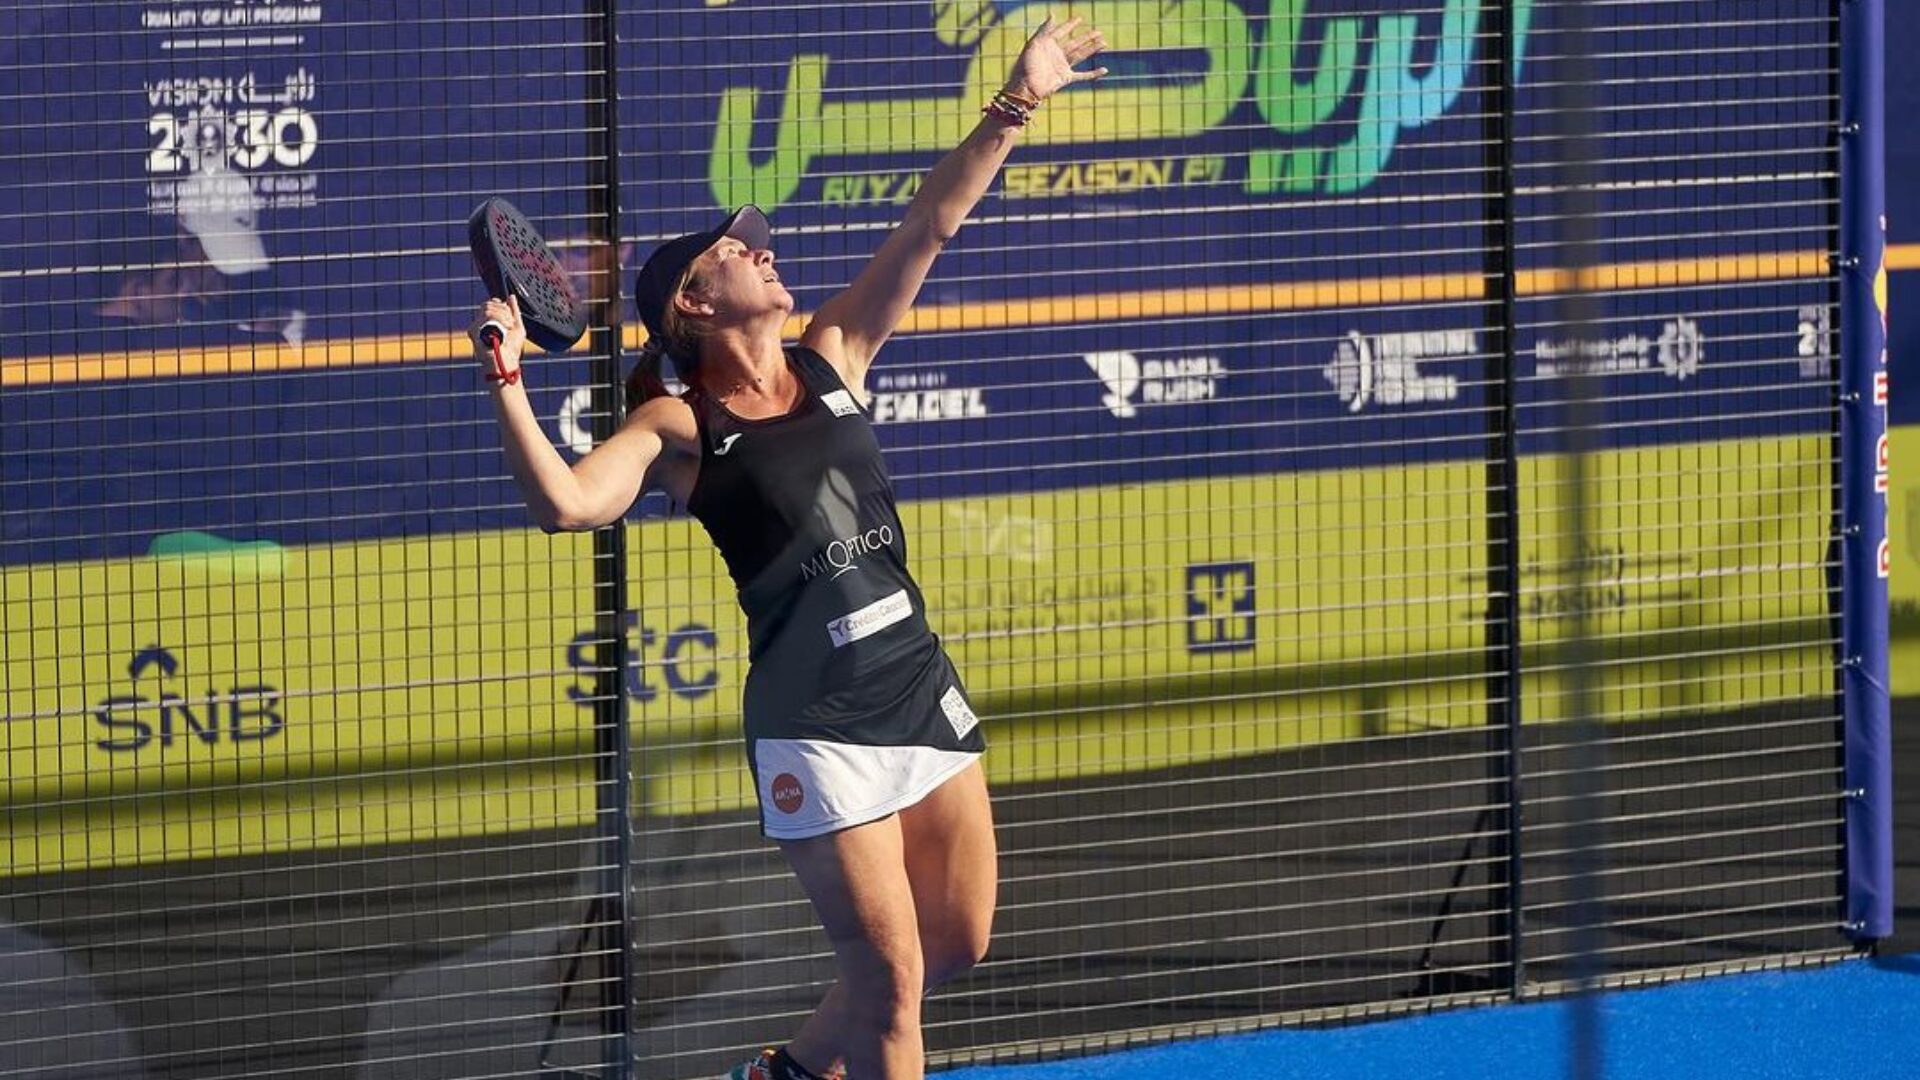 Carolina Navarro ćwierćfinalistką dużego turnieju w wieku 48 lat!